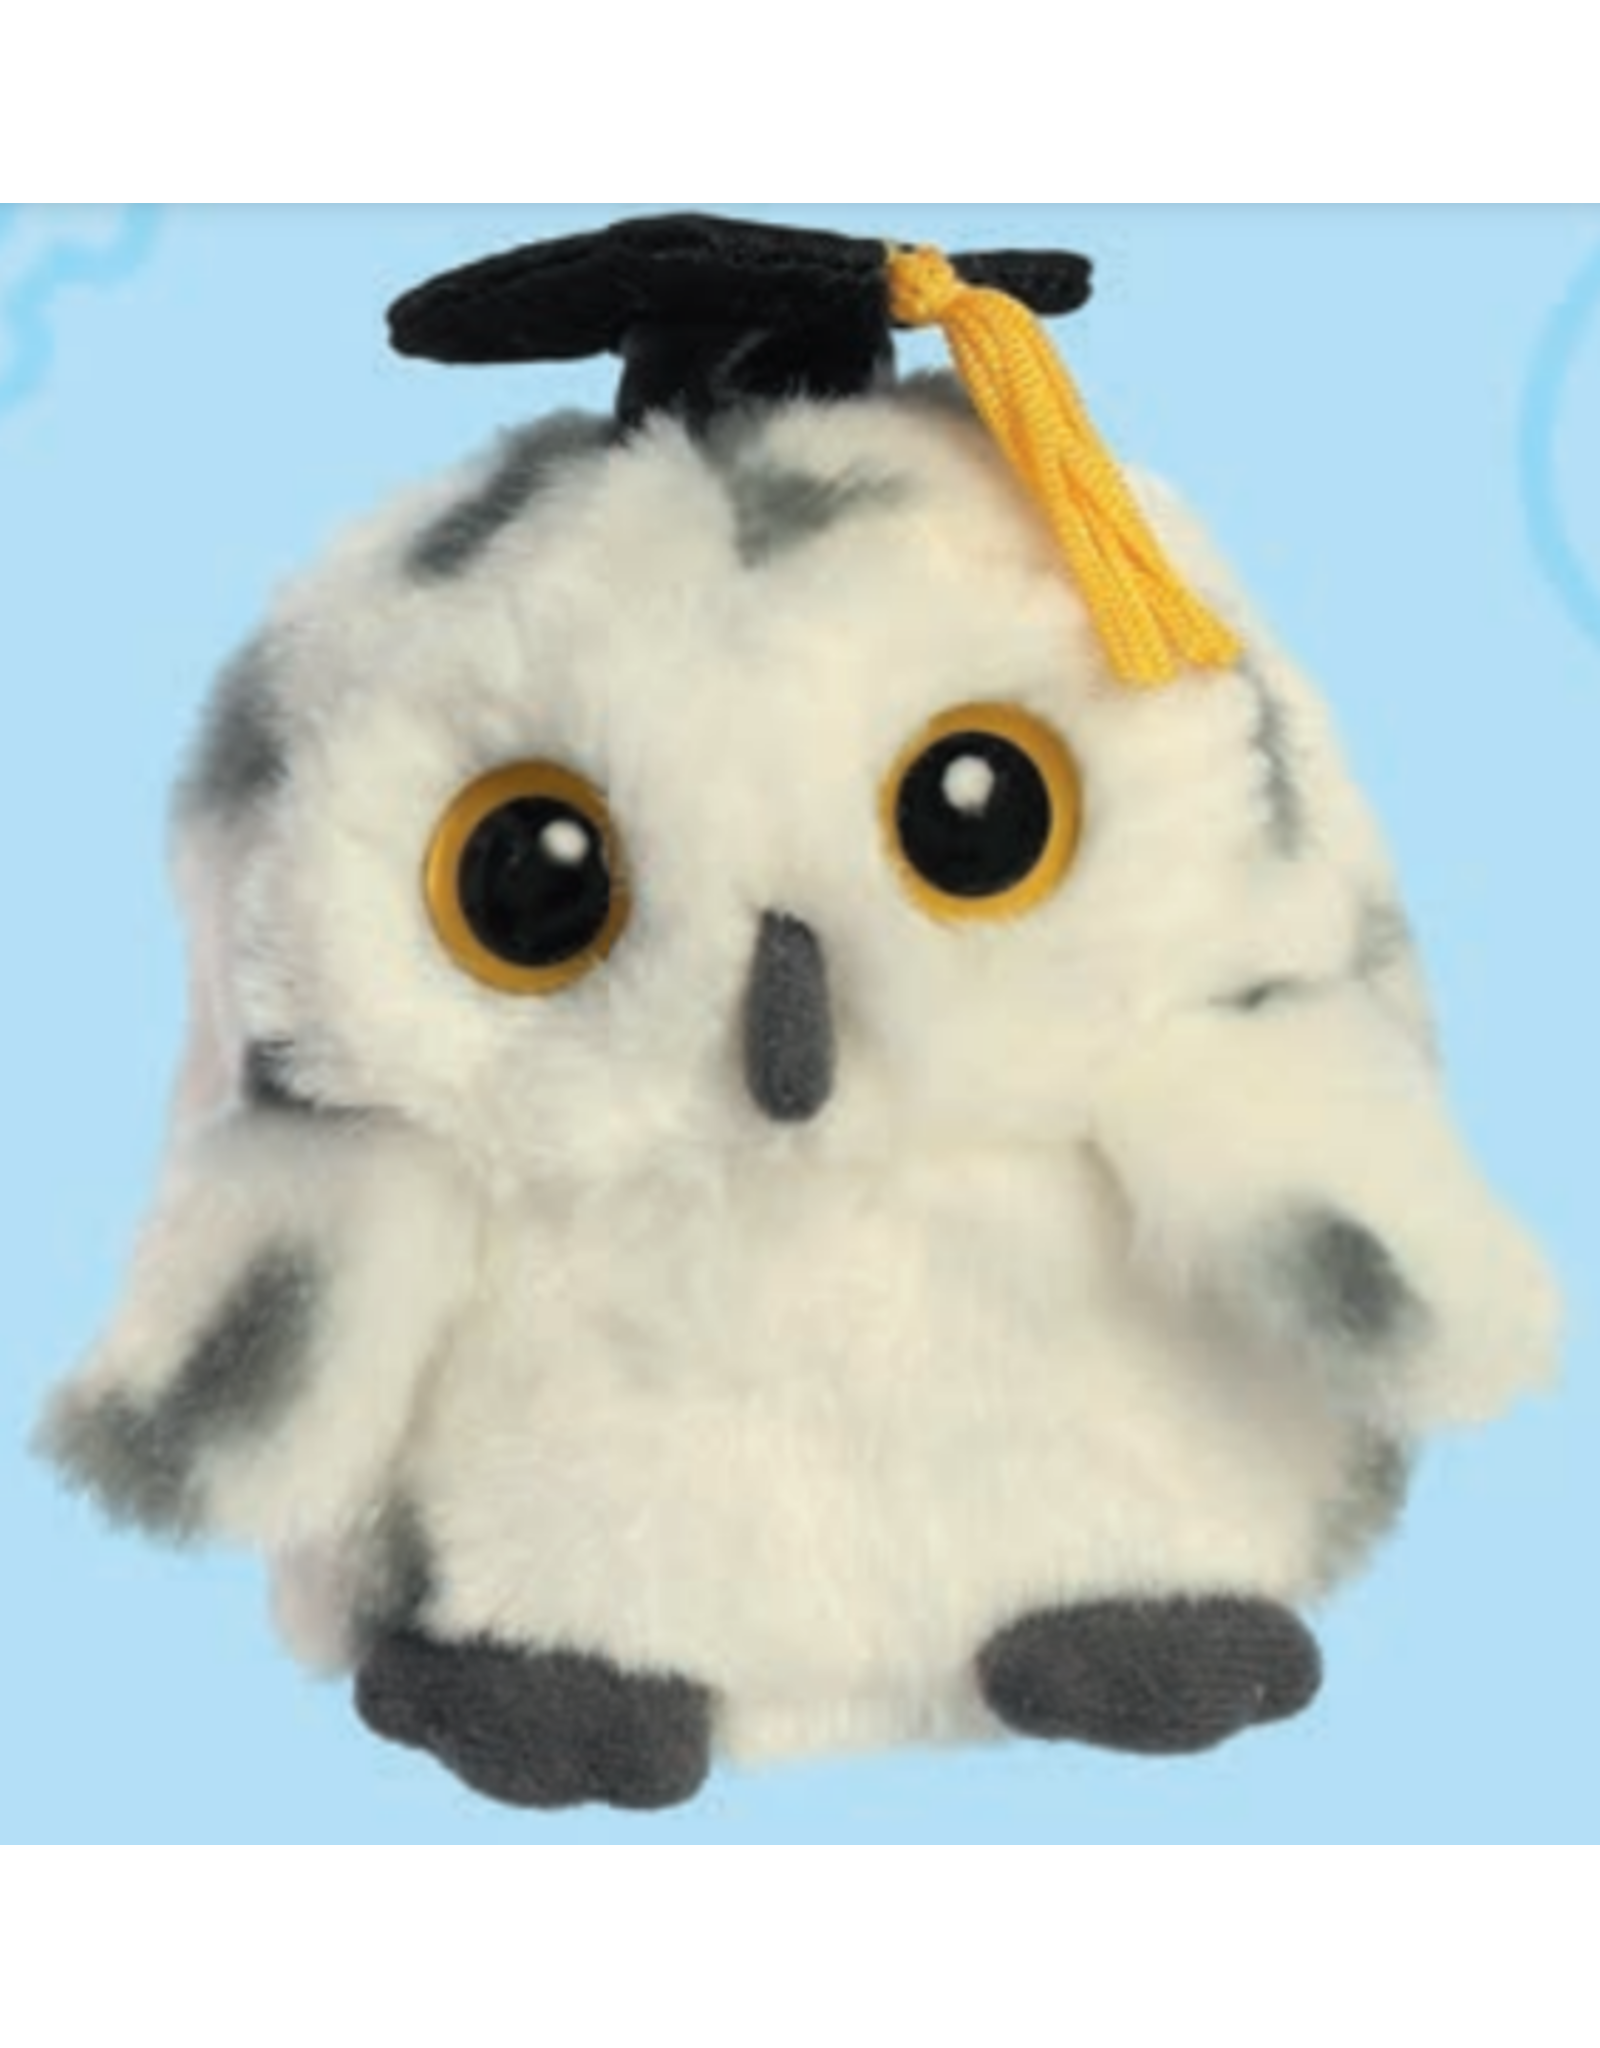 Graduation Owl Asst. 3.5"